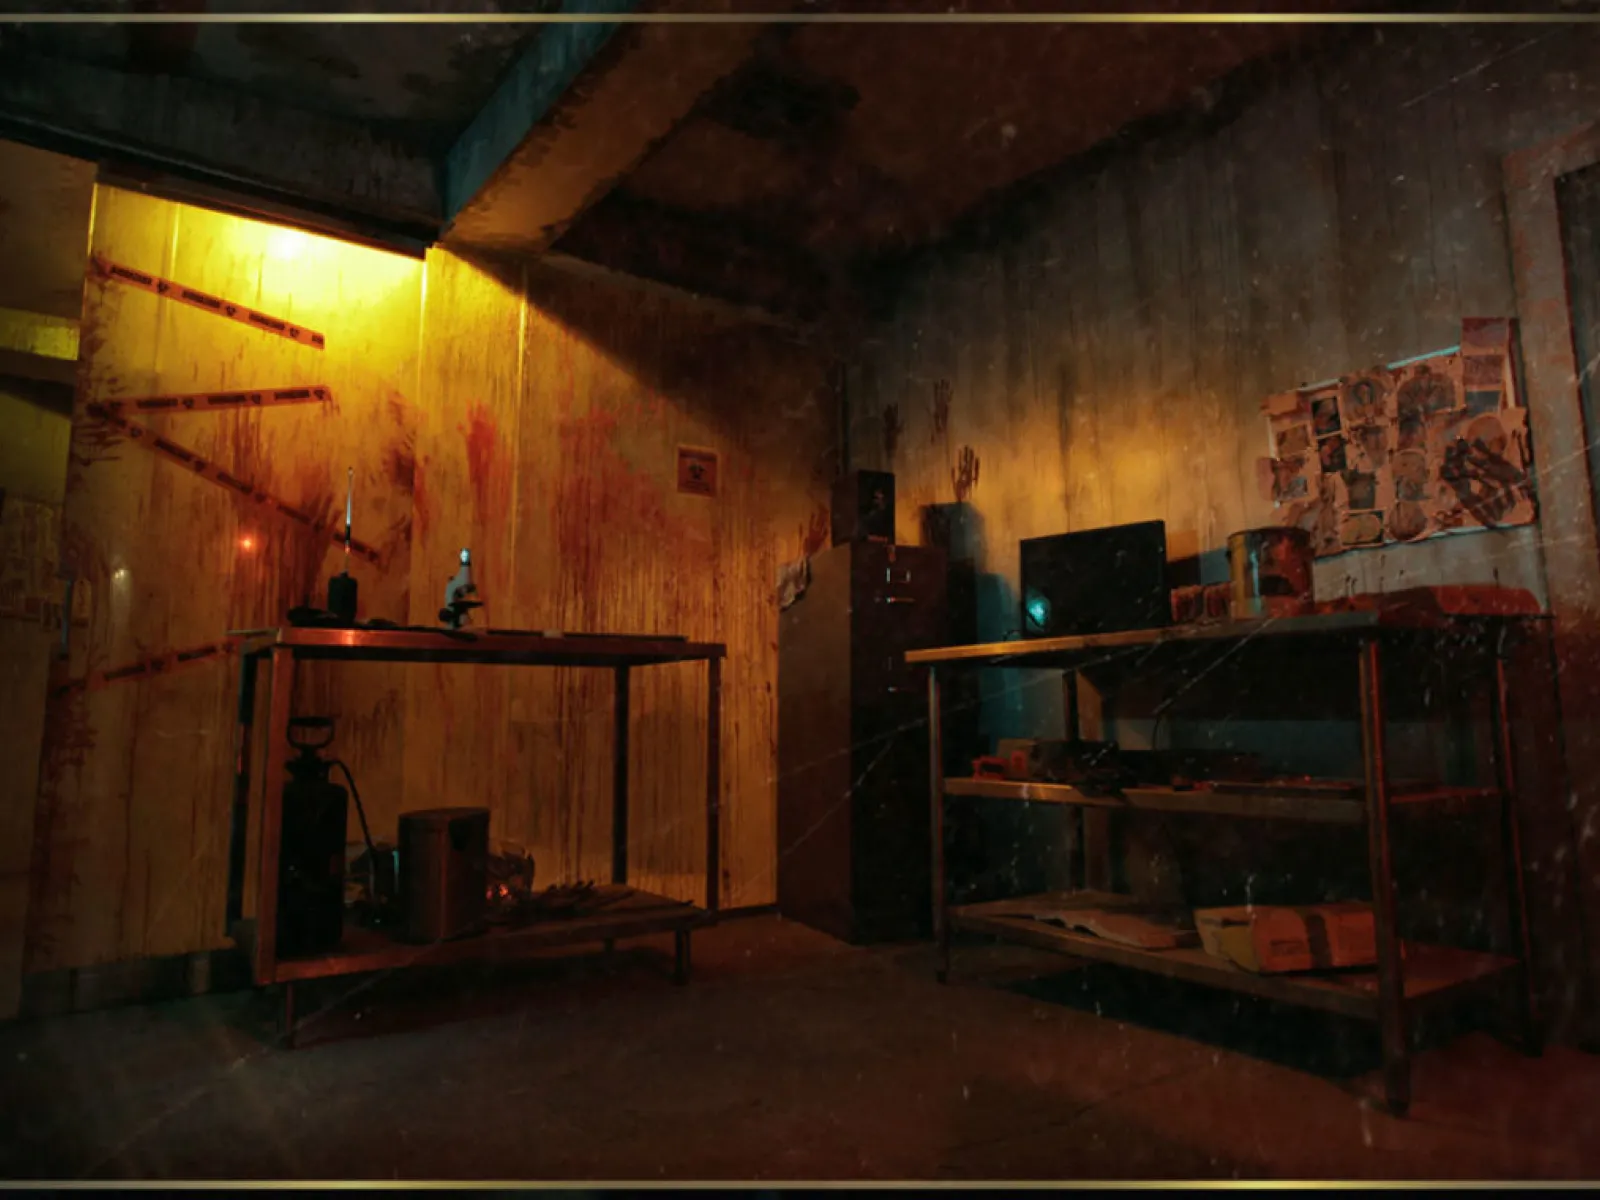 Sherlock's Ultimate Challenge Escape Room, Virtual Escape Room